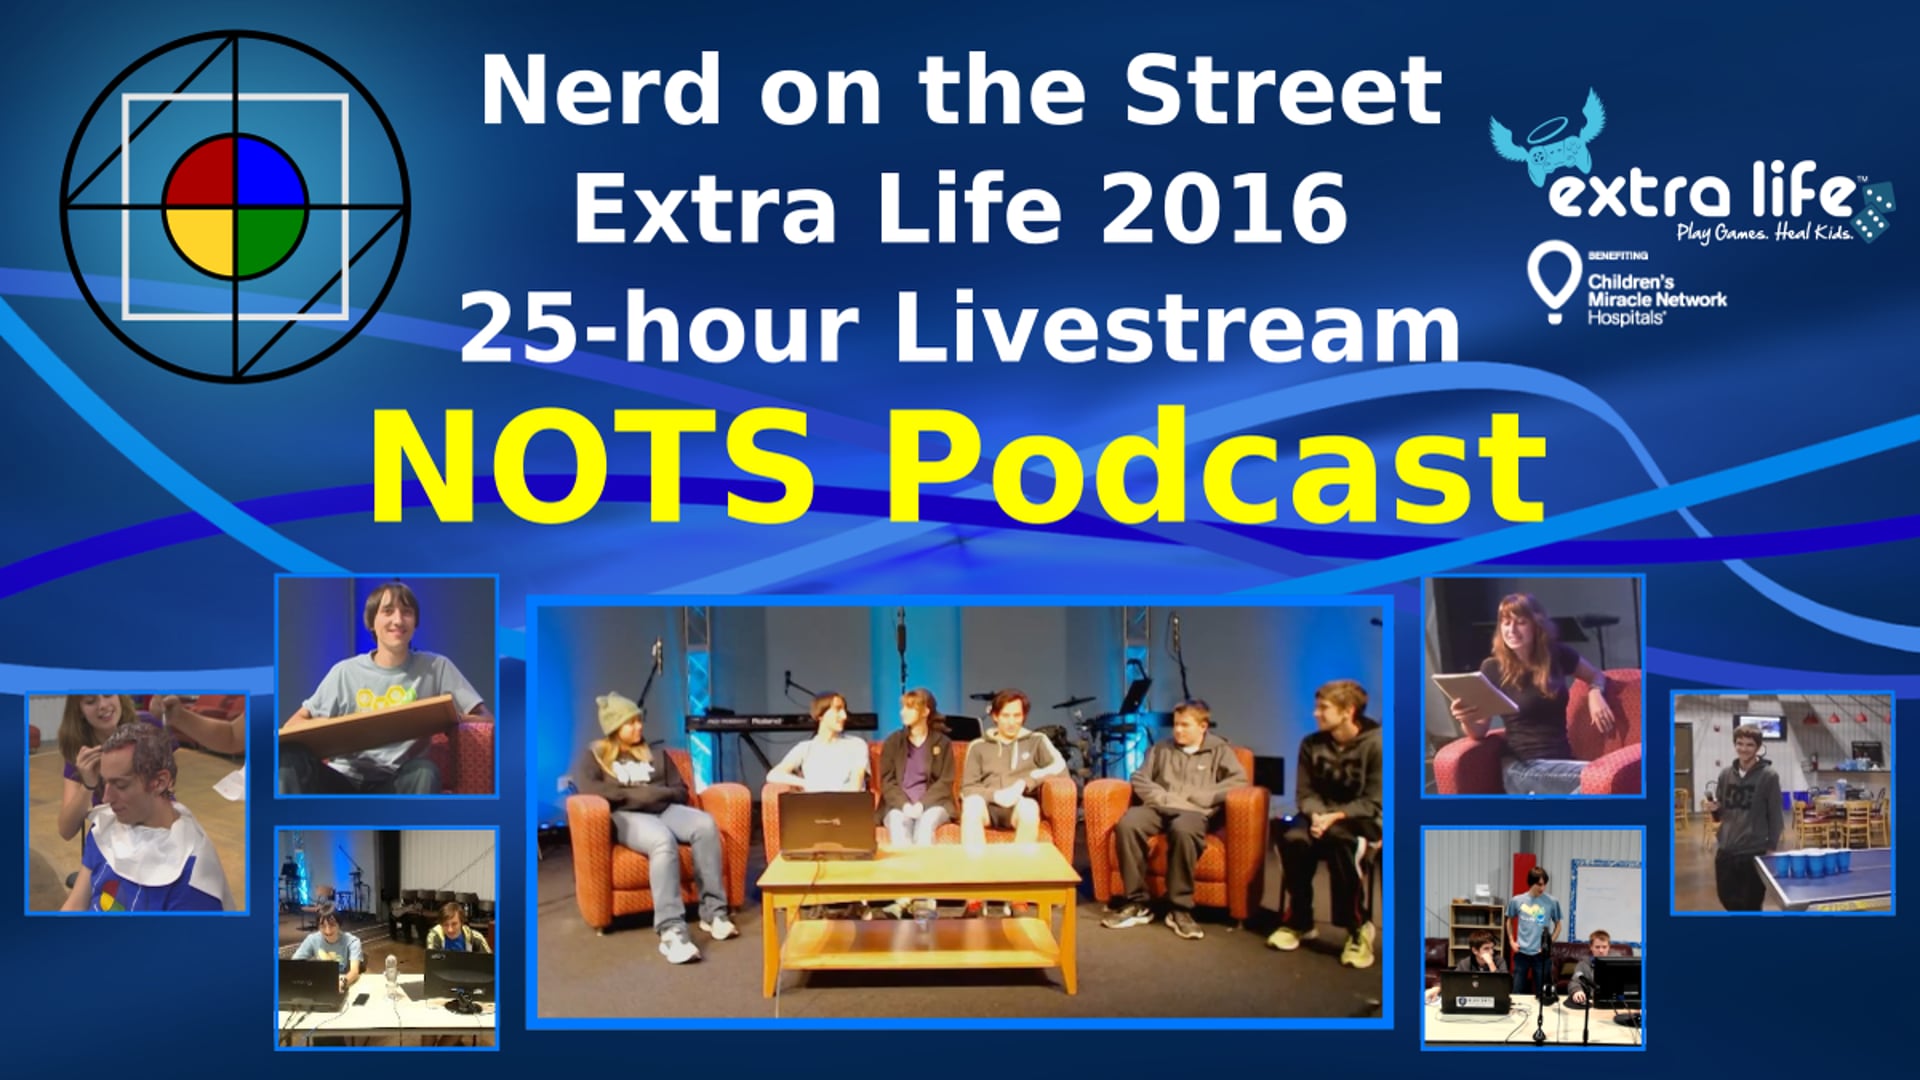 NOTS Podcast - Extra Life 2016